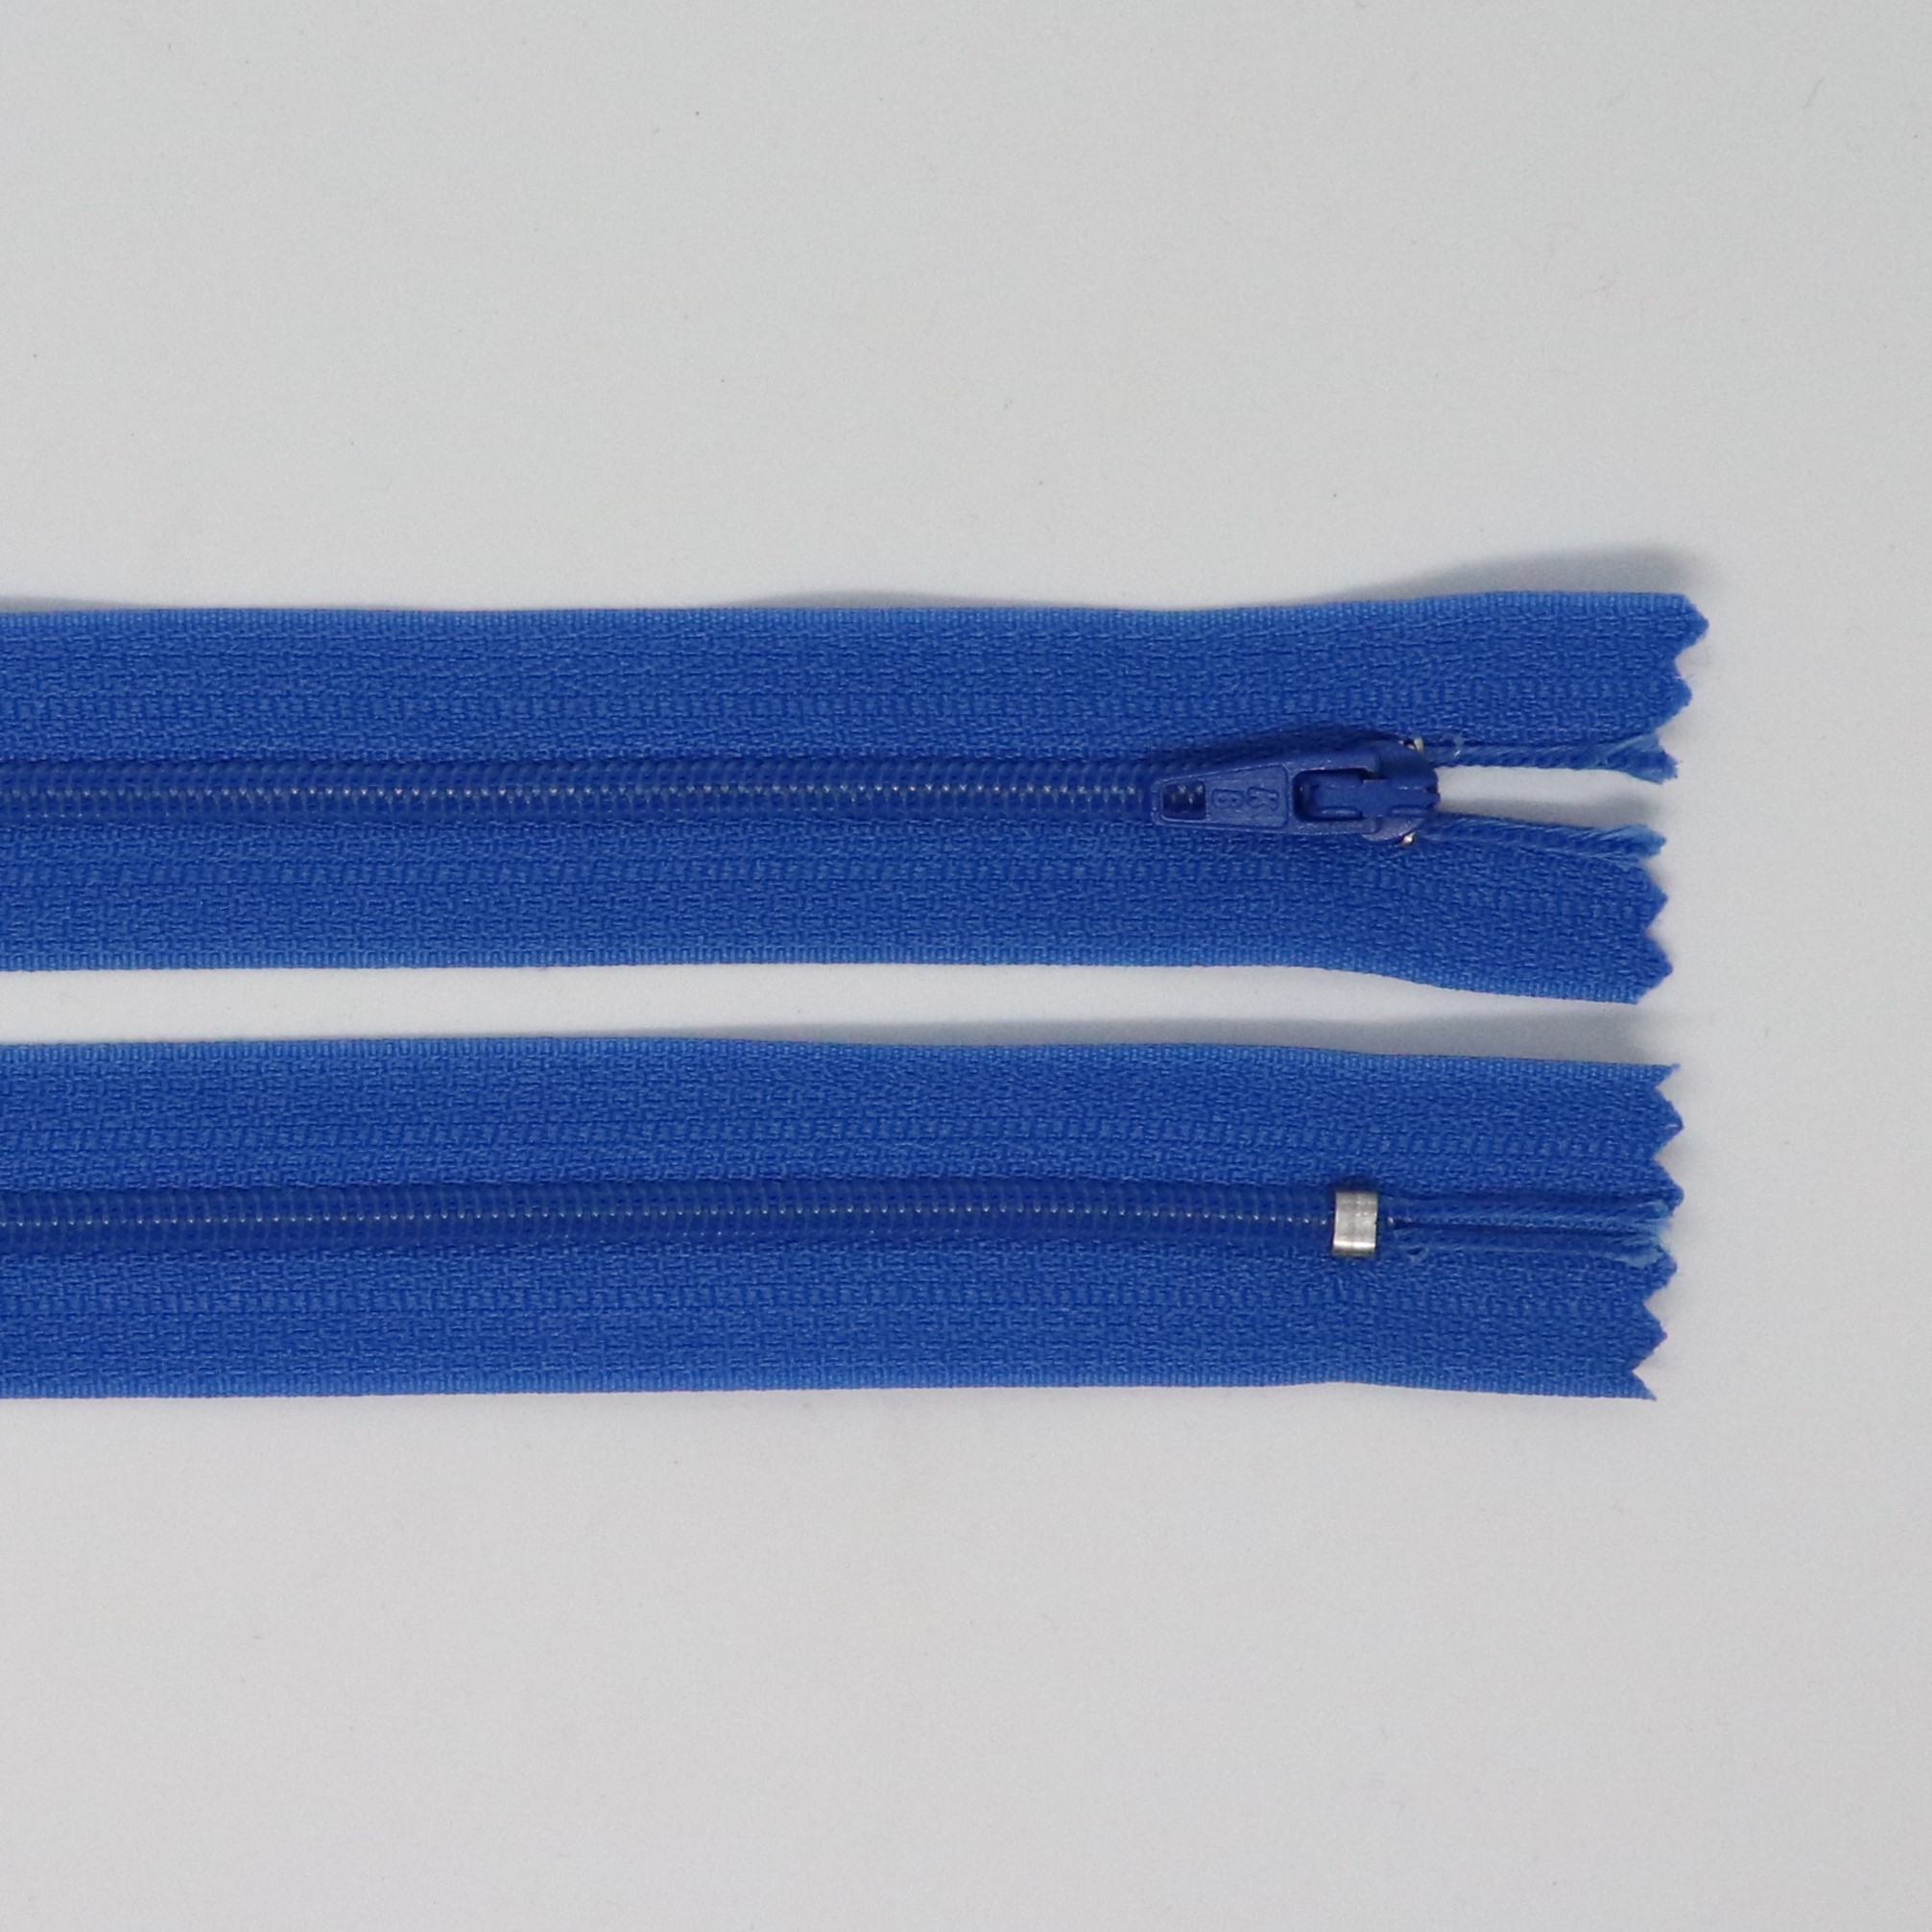 Spirálový zip, šíøe 3 mm, délka 65 cm, modrá - zvìtšit obrázek